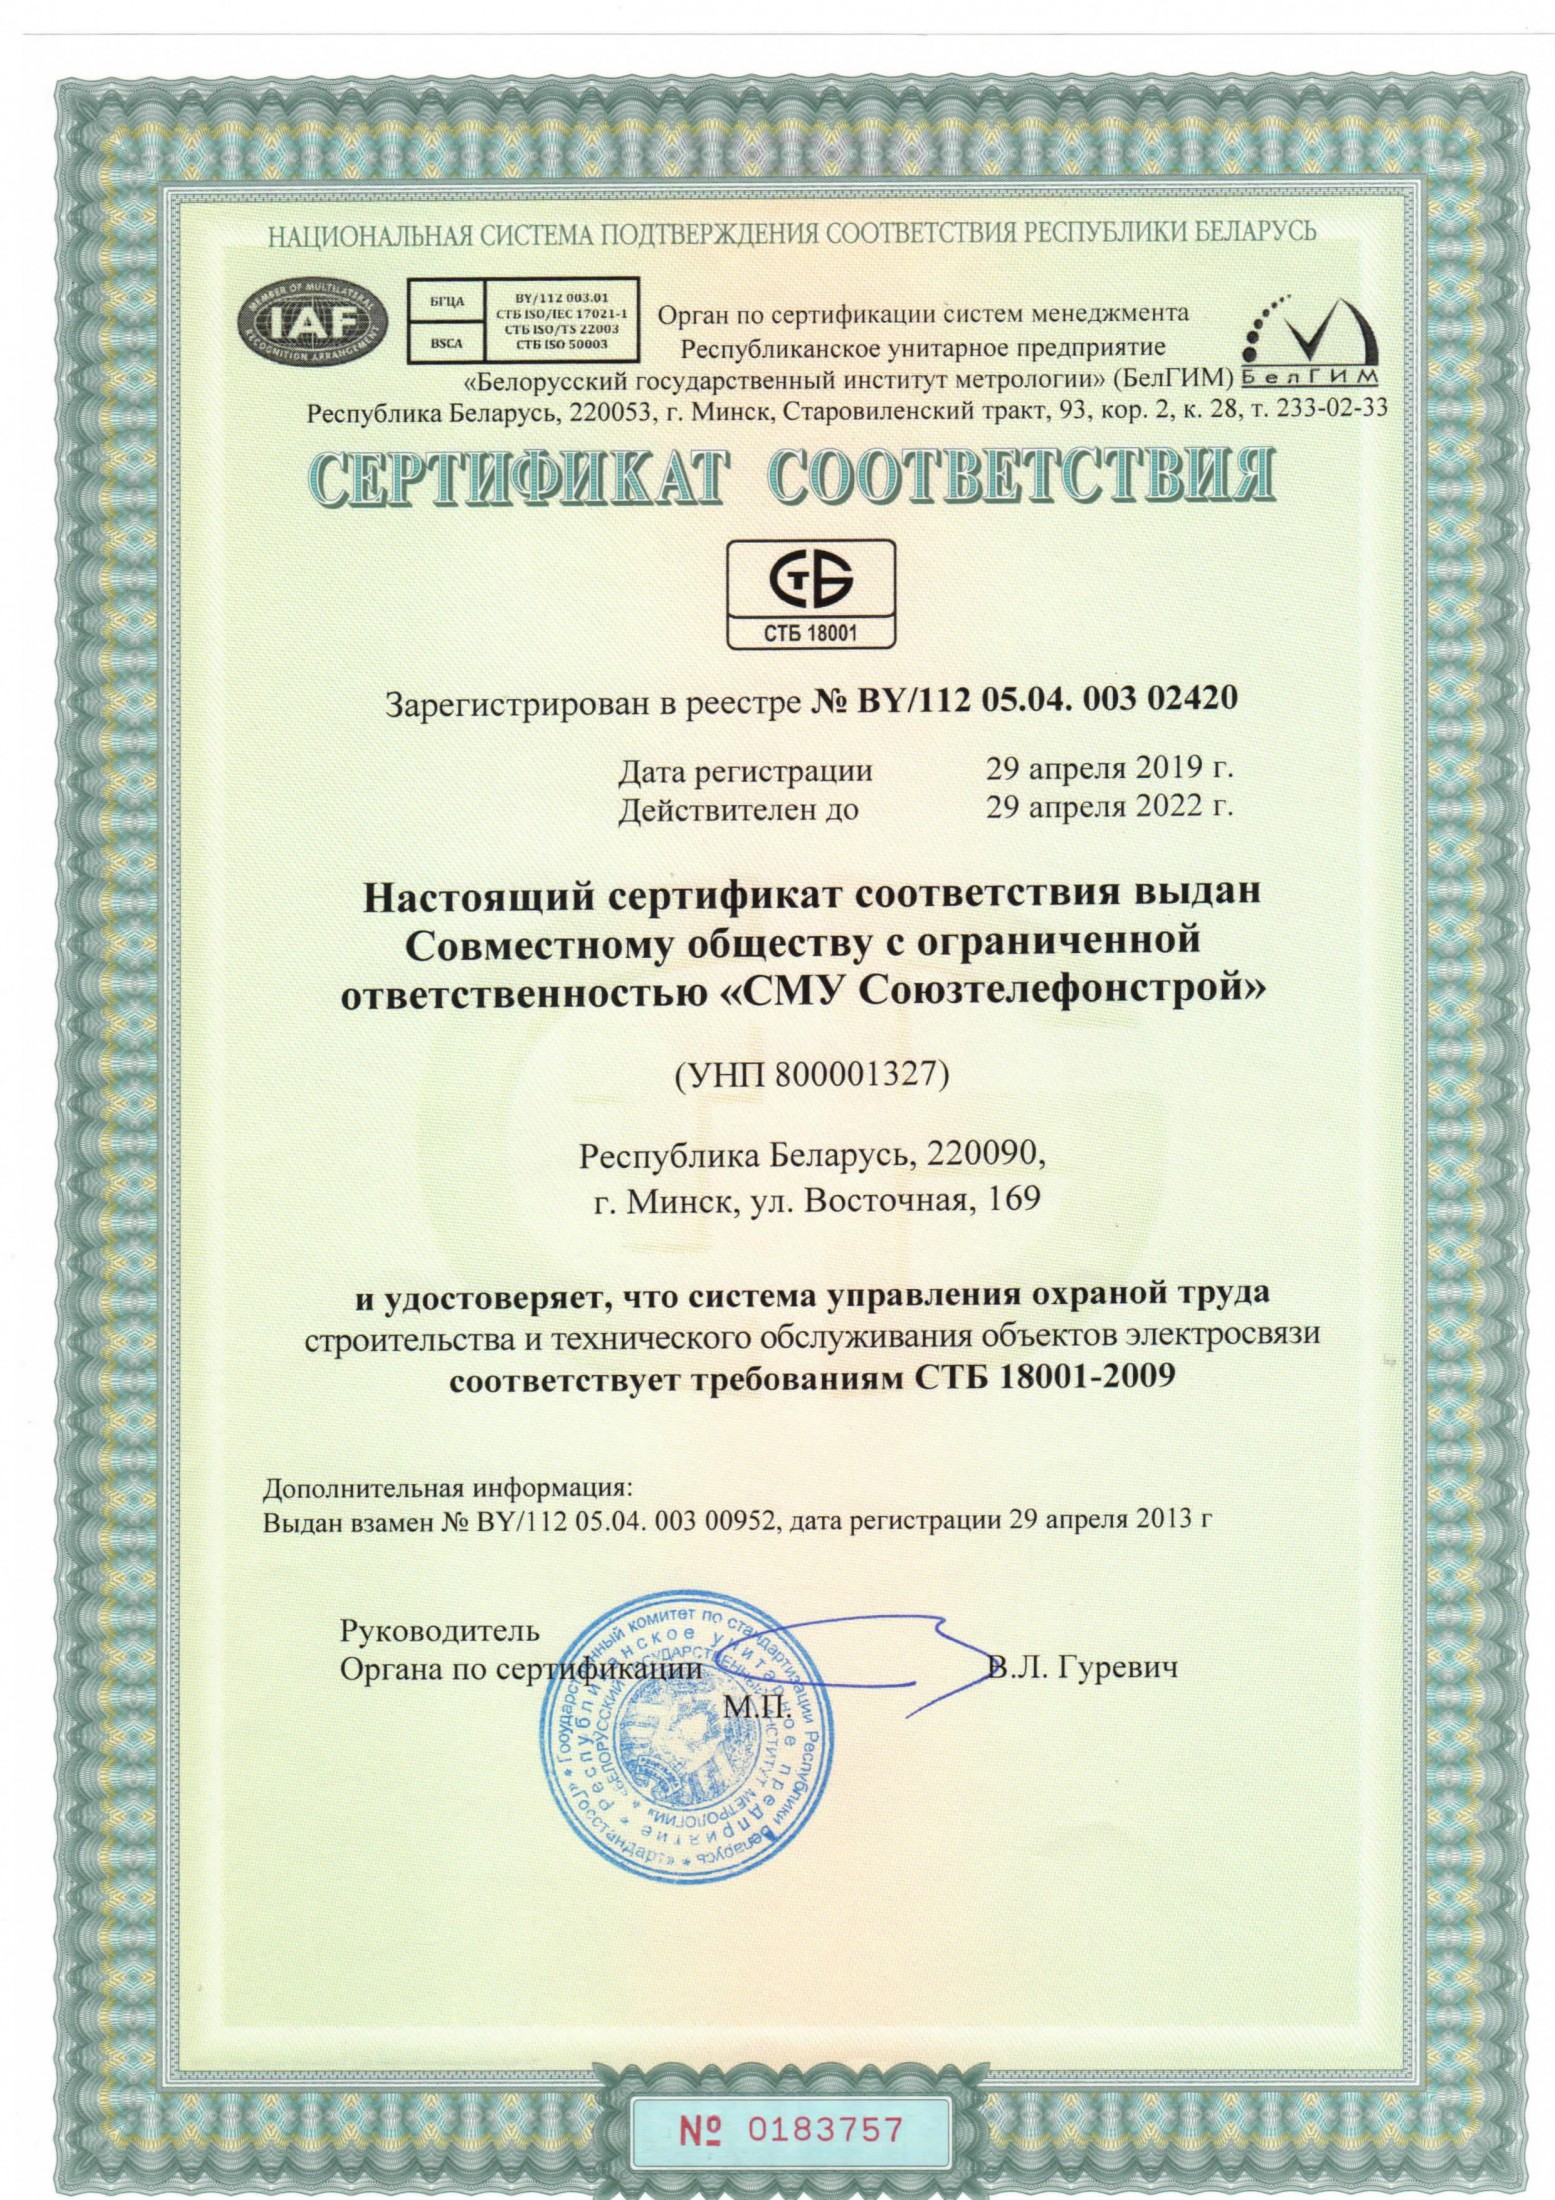  Сертификат соответствия системе менеджмента охраны труда